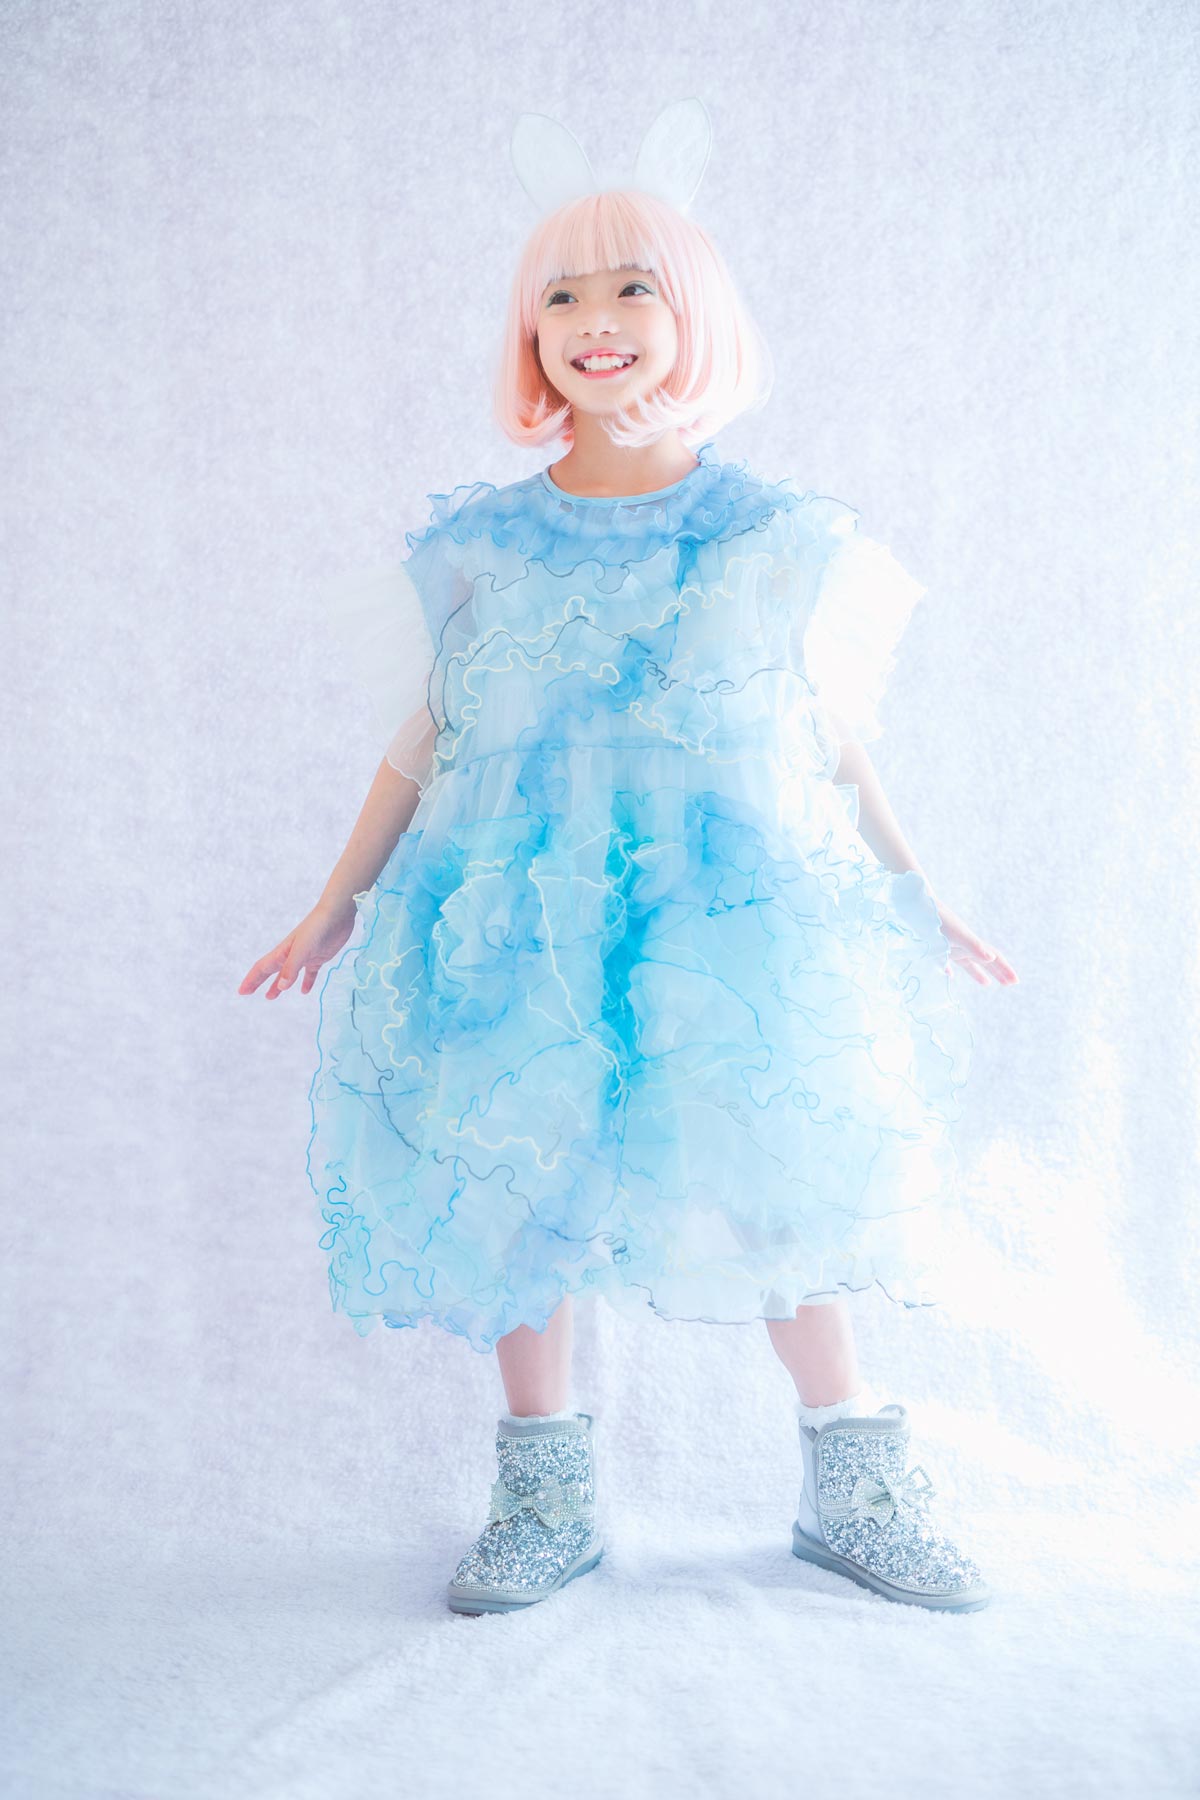 キッズドレス | 雪解け水の青いフリル | 子供のおしゃれなレンタル衣装 - heartmelt